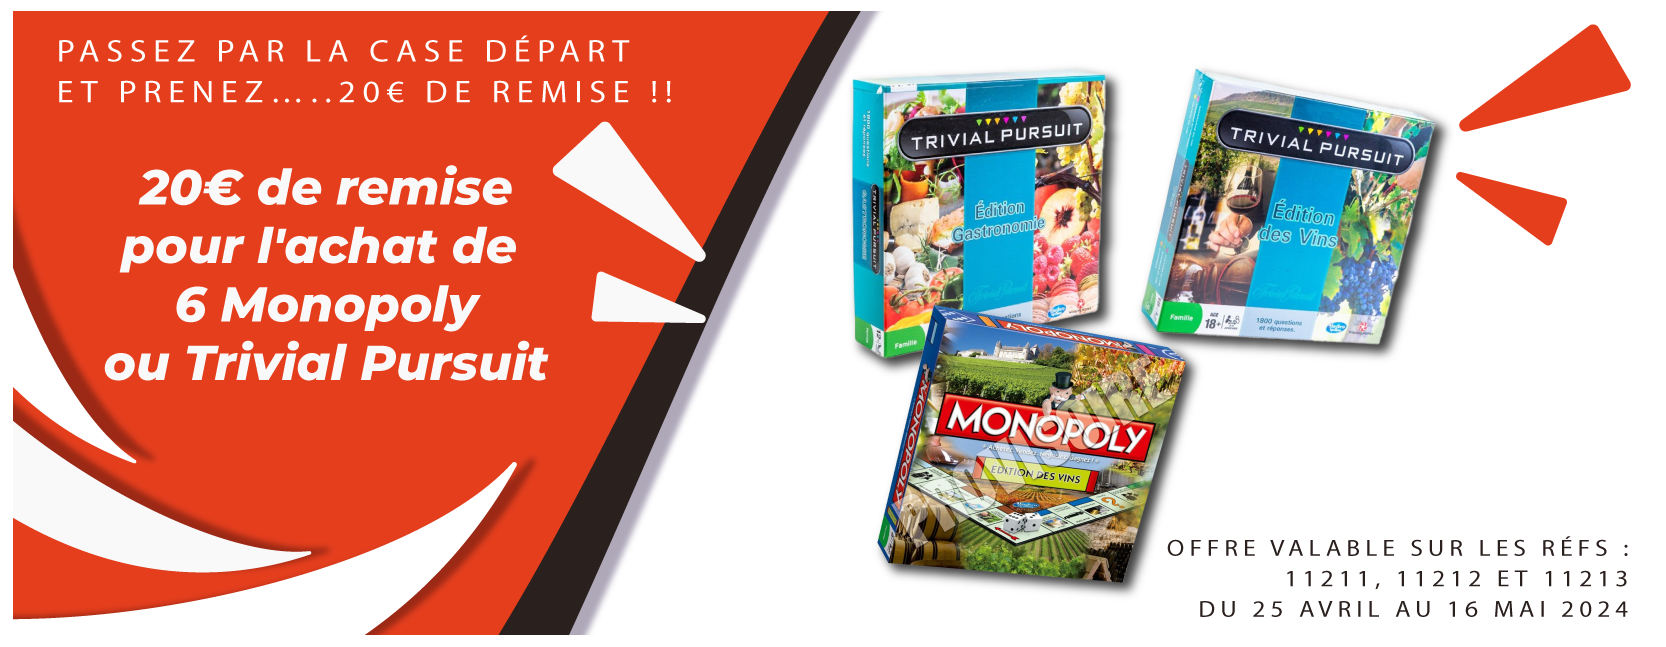 20€ de remise sur 6 monopoly ou trivial pursuit achetés !